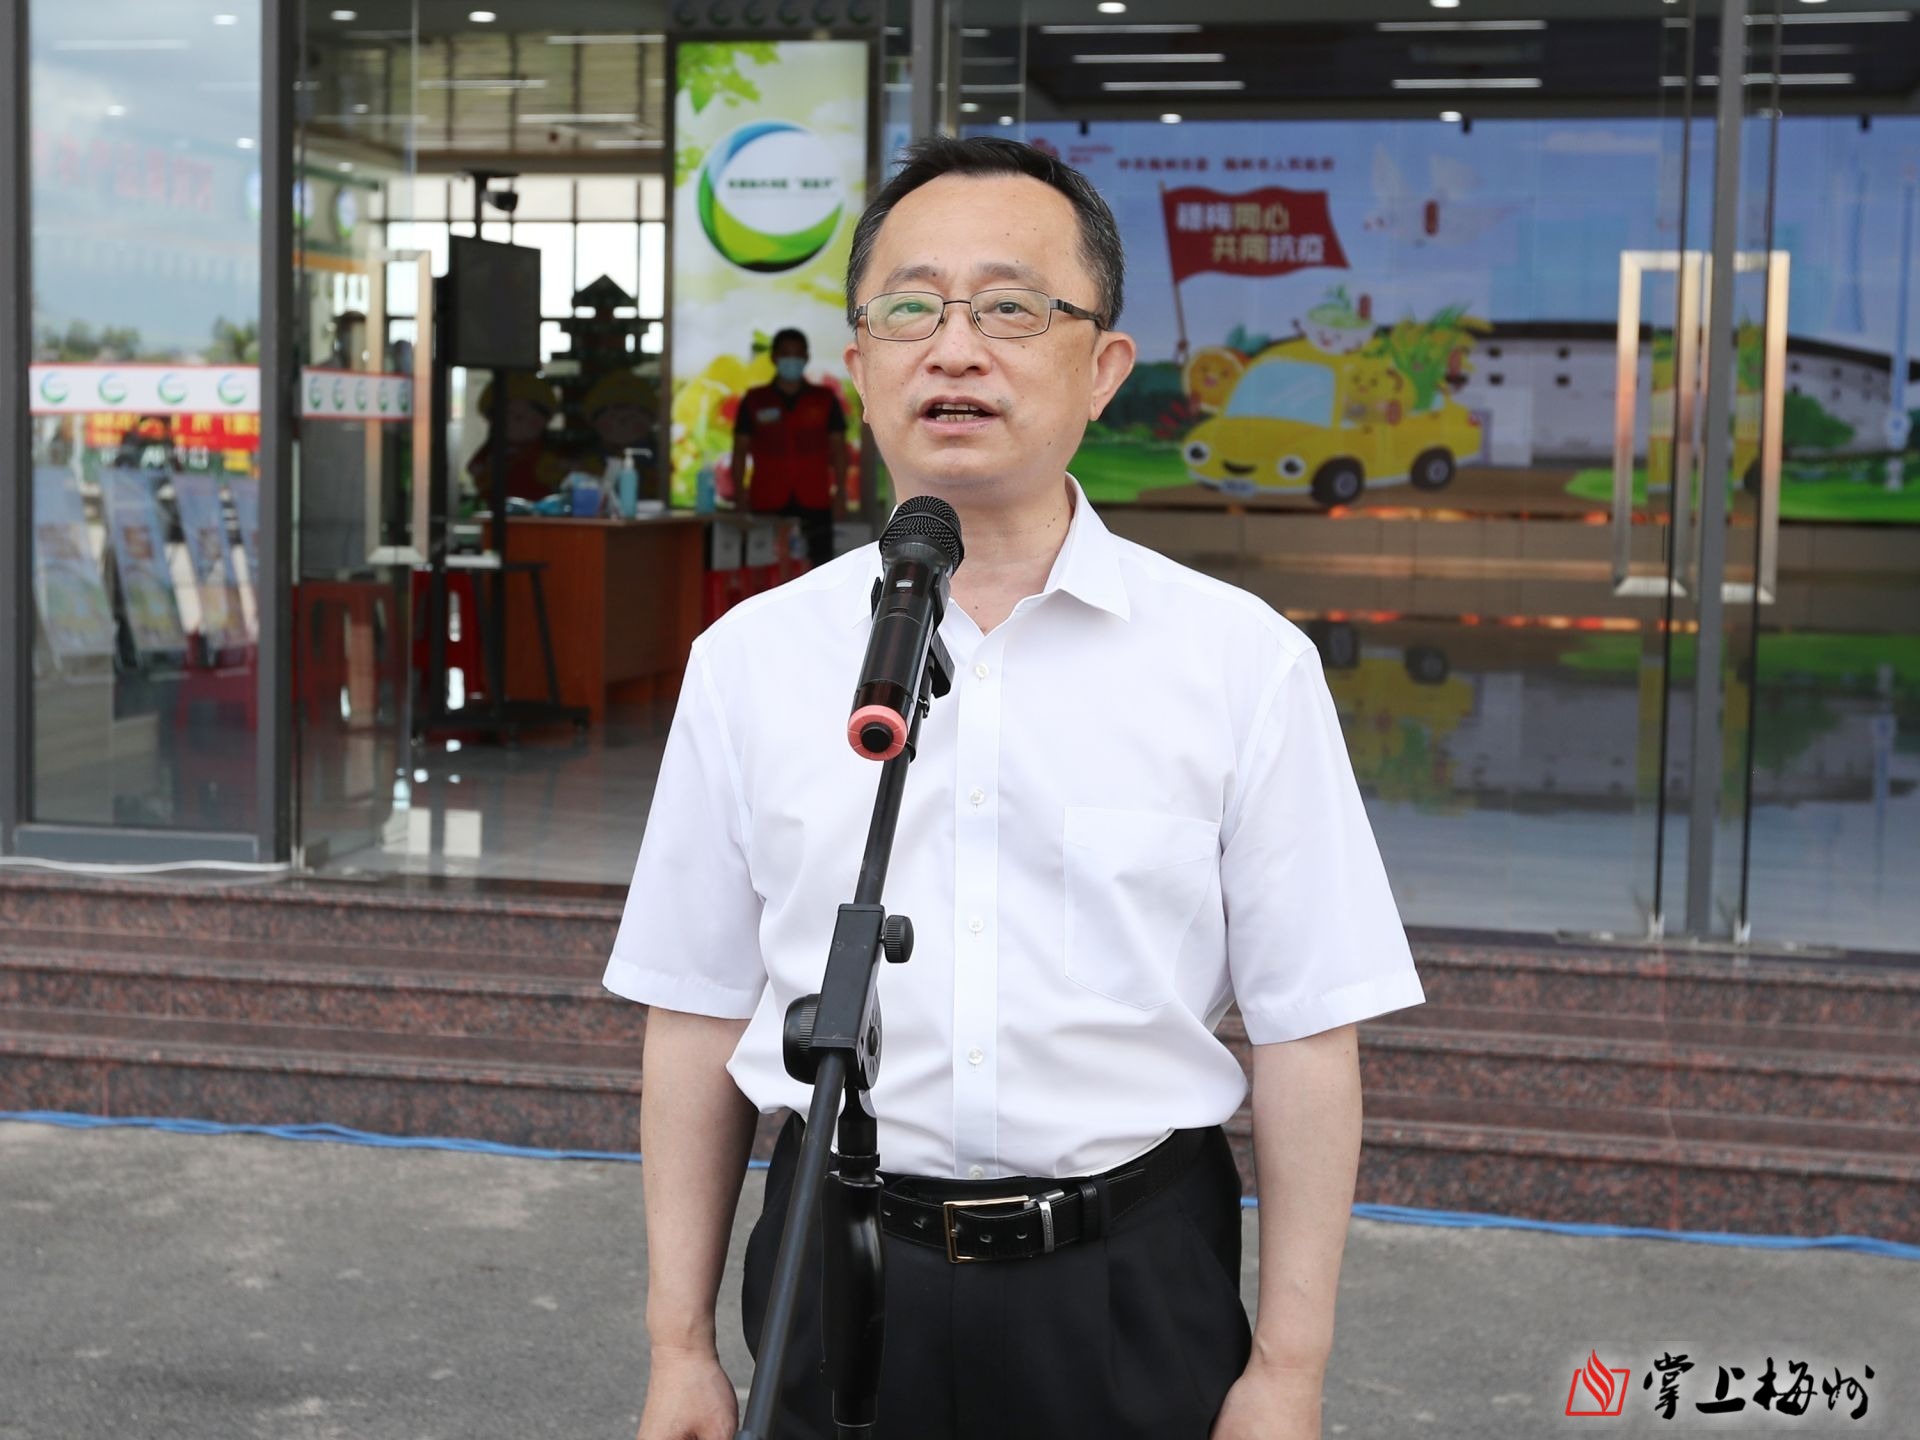 市委书记陈敏宣布支援广州同心抗疫捐赠发车,市长张爱军参加仪式并作